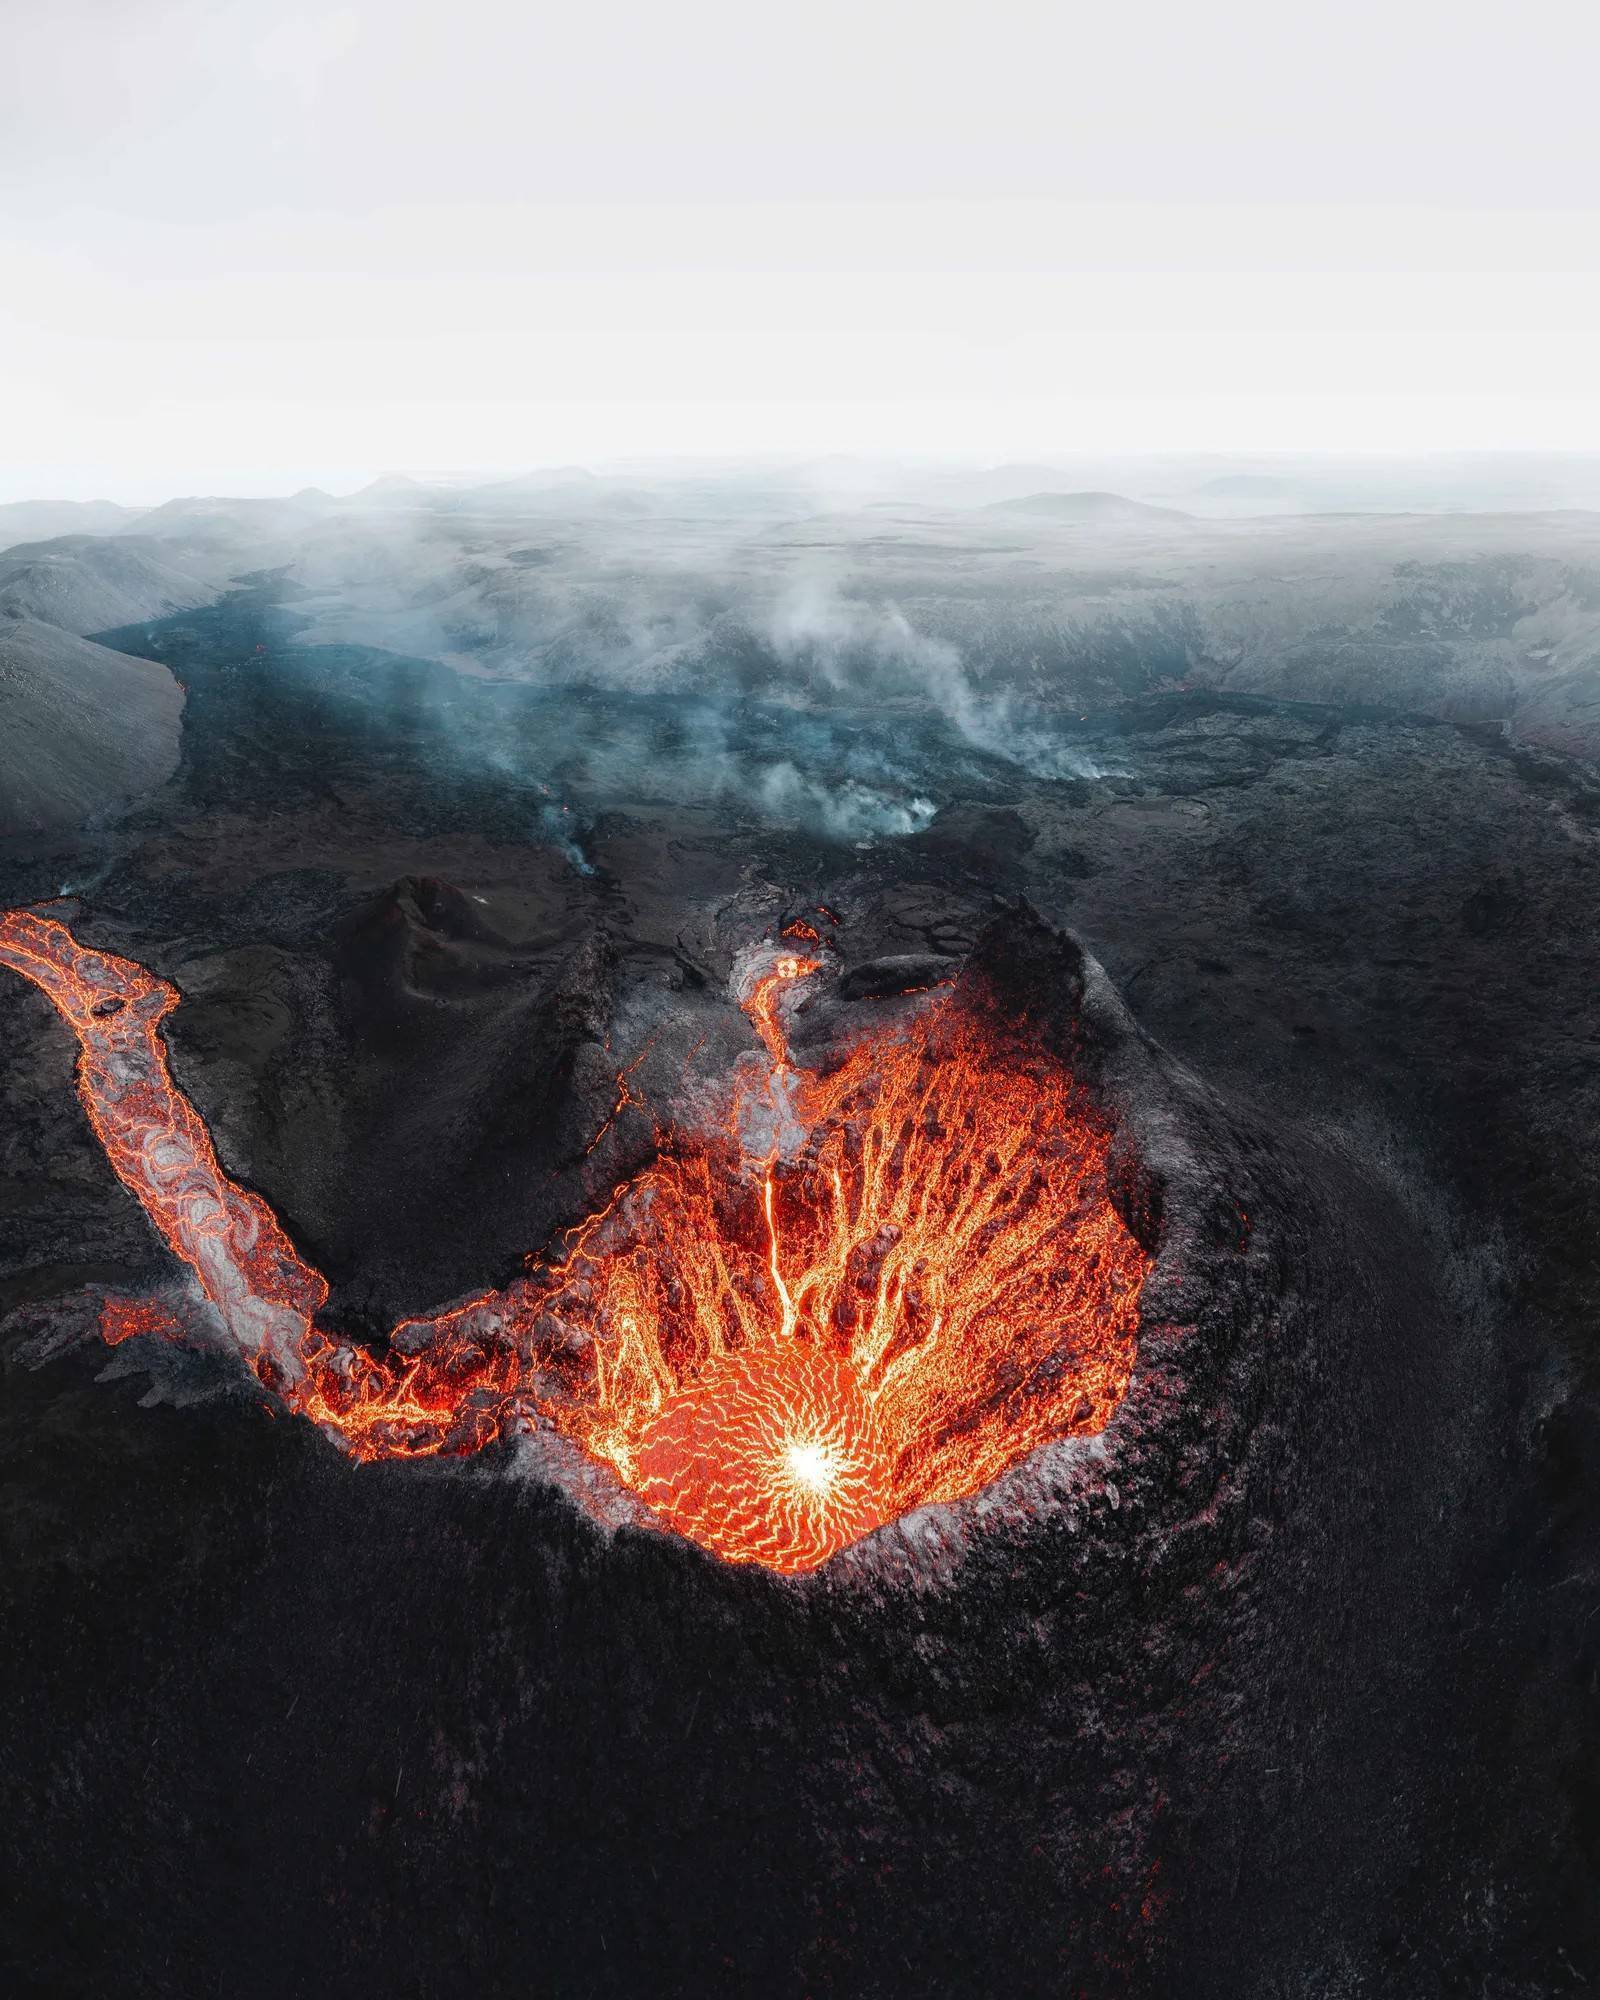 摄影图片欣赏:史上最震撼的火山喷发图景(下)